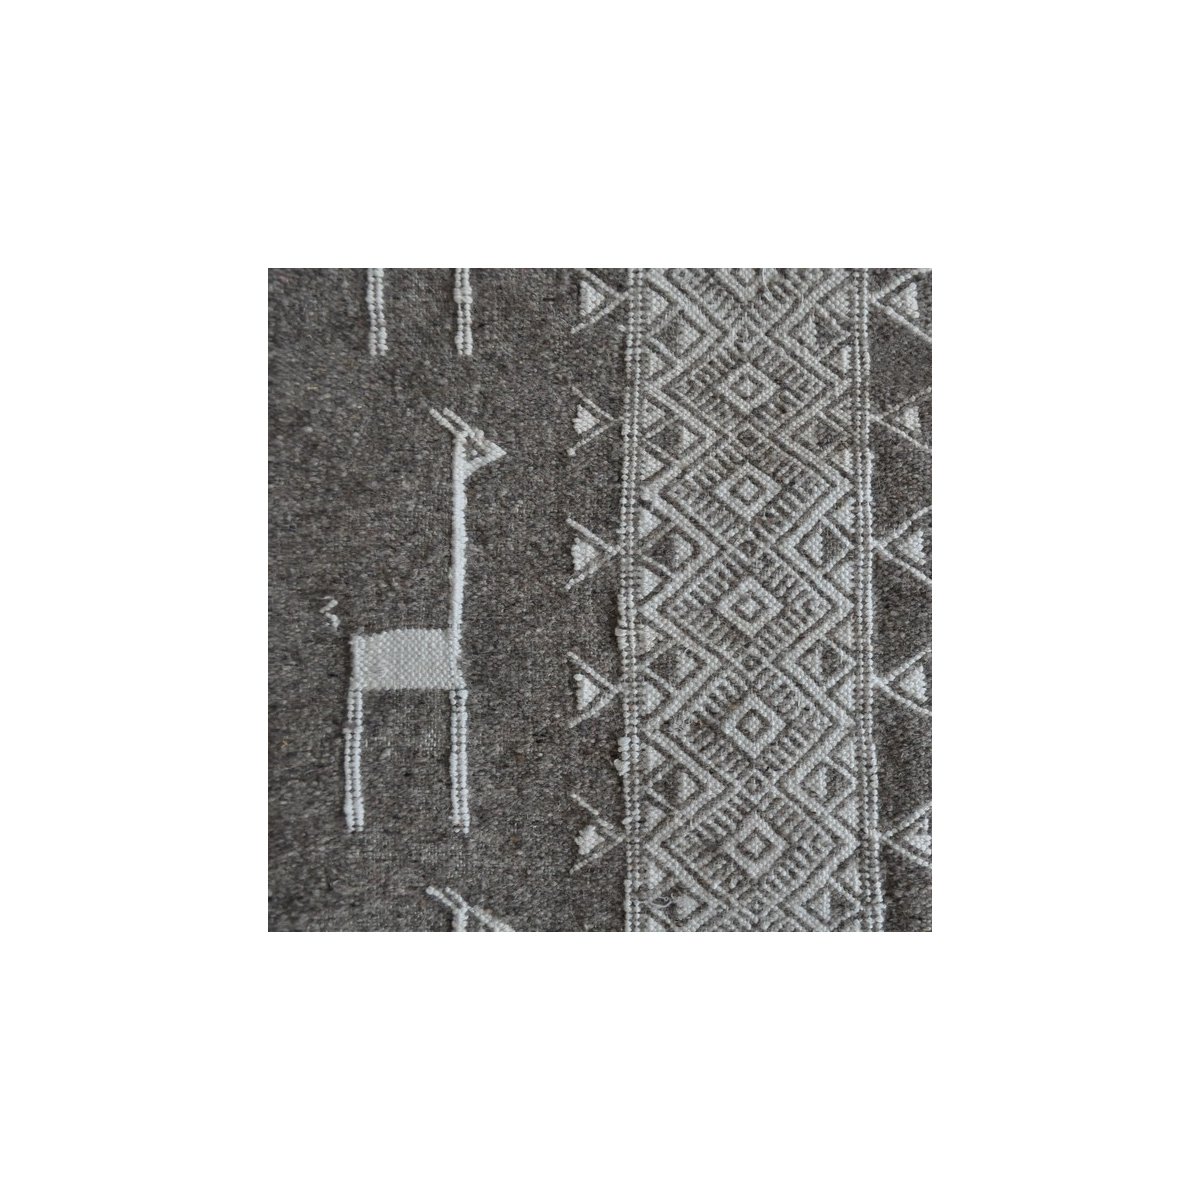 Tapis berbère Tapis Kilim Hassi Amor 130x190 Gris/Noir/Blanc (Tissé main, Laine) Tapis kilim tunisien style tapis marocain. Tapi